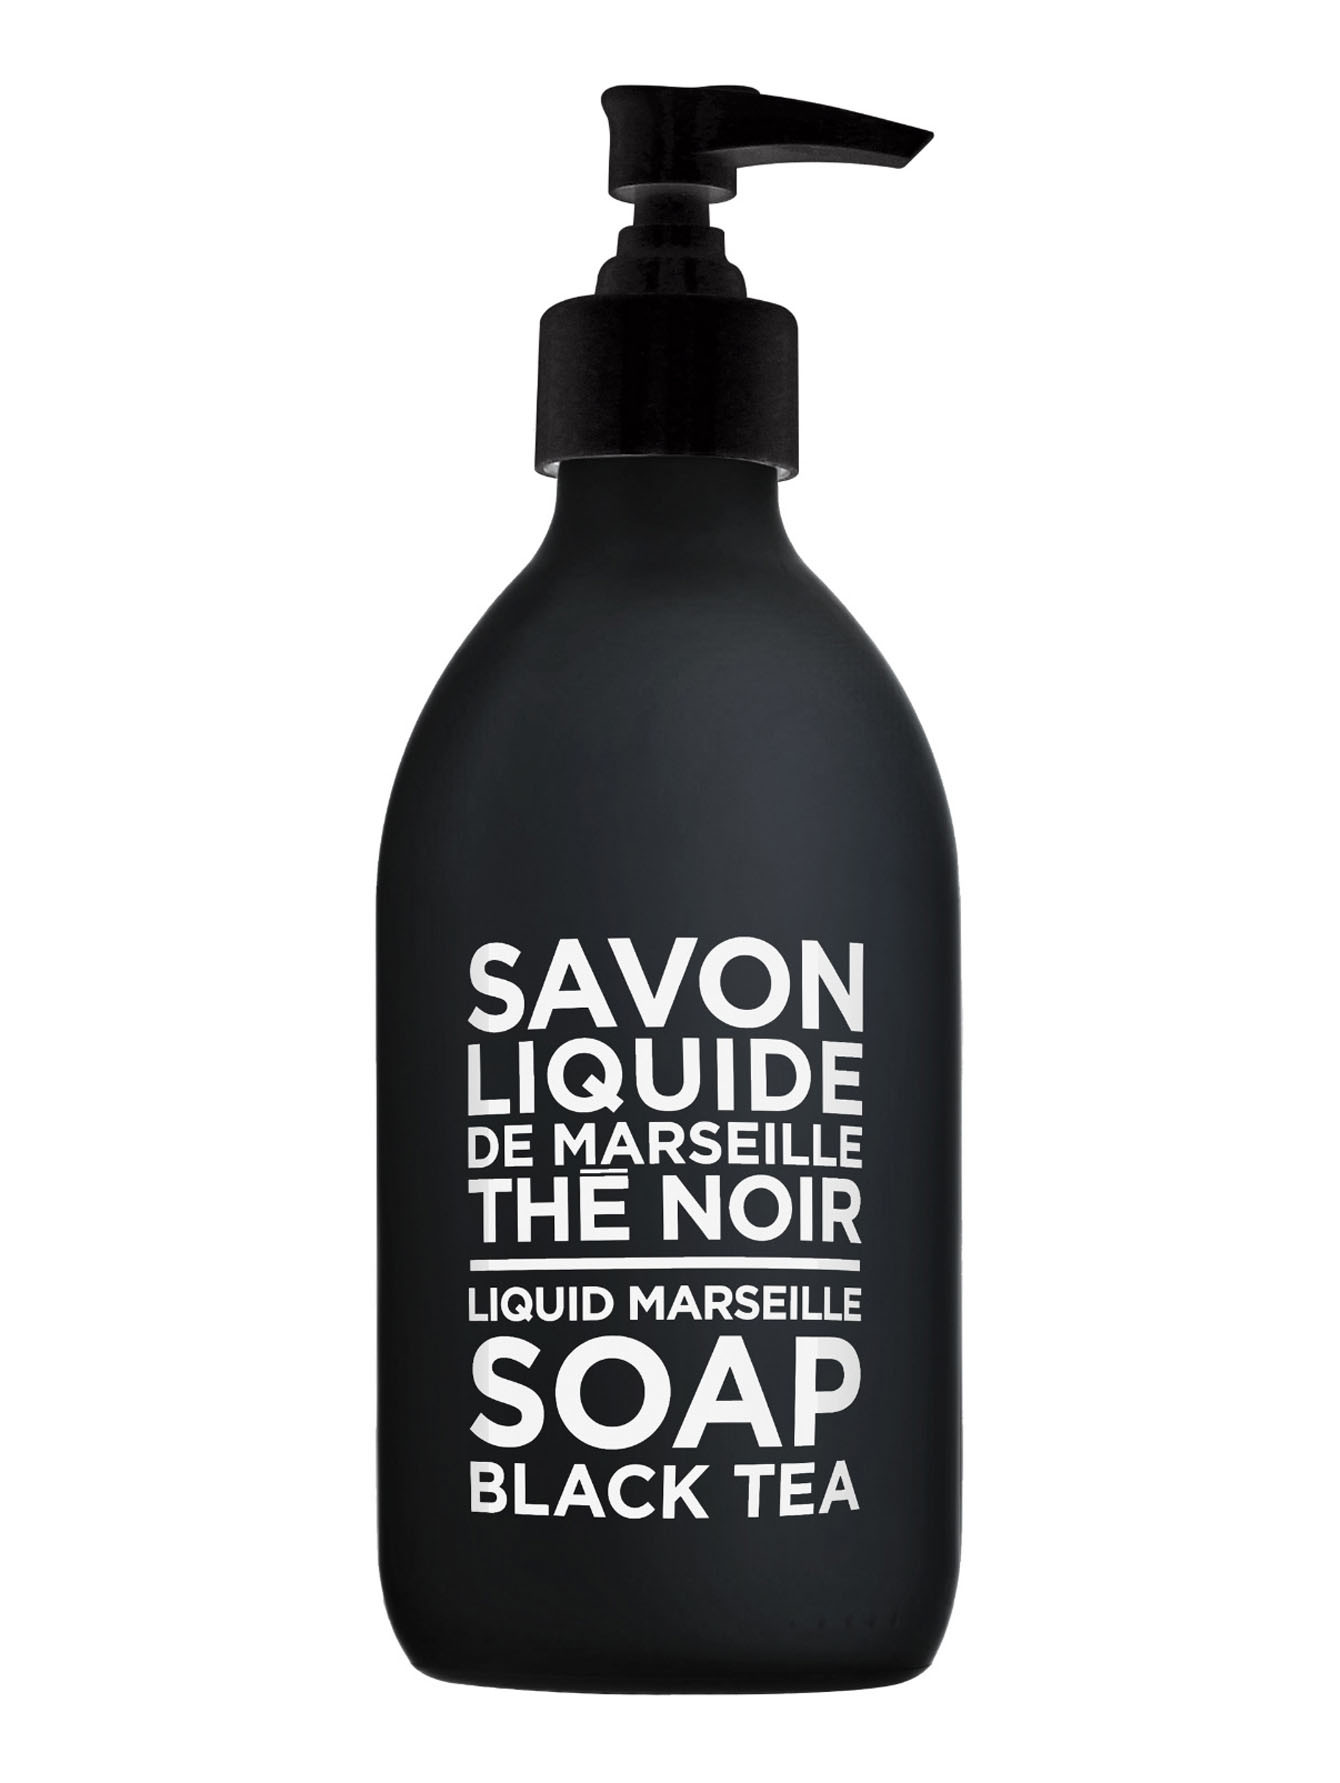 Жидкое мыло для тела и рук The Noir/Black Tea, 300 мл - Общий вид